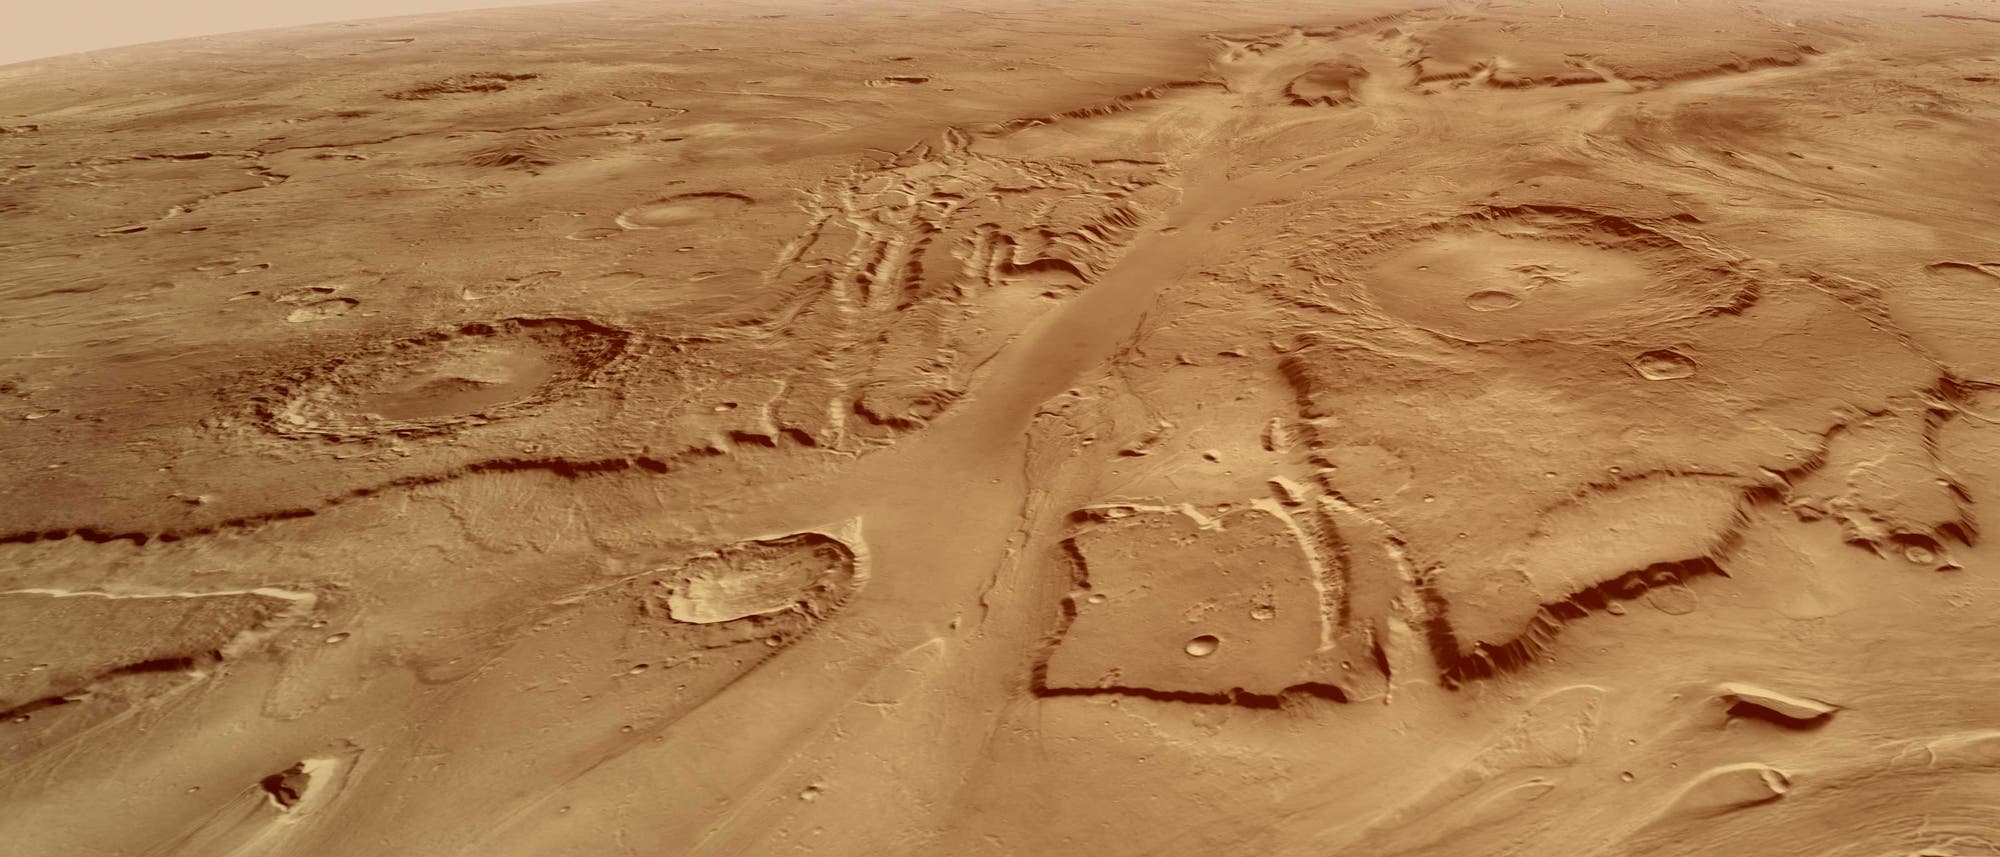 Kasei Valles auf der Marsoberfläche